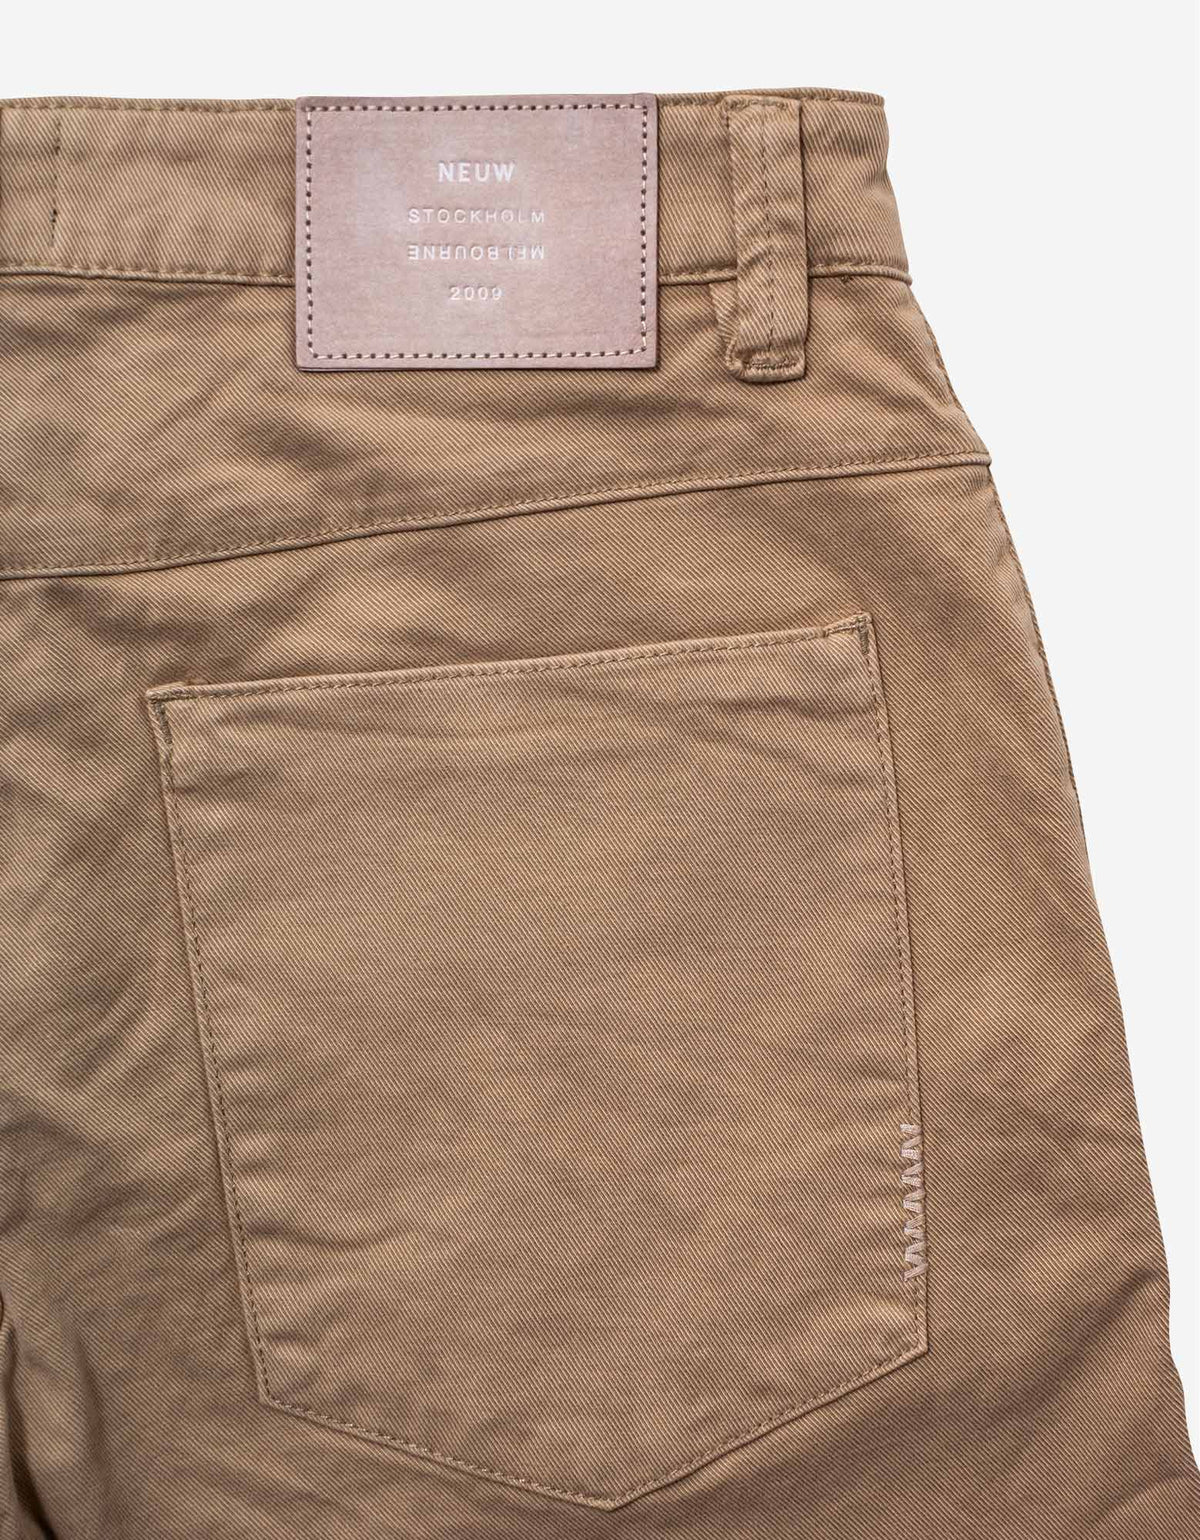 Neuw Cody Sand Tailored Shorts